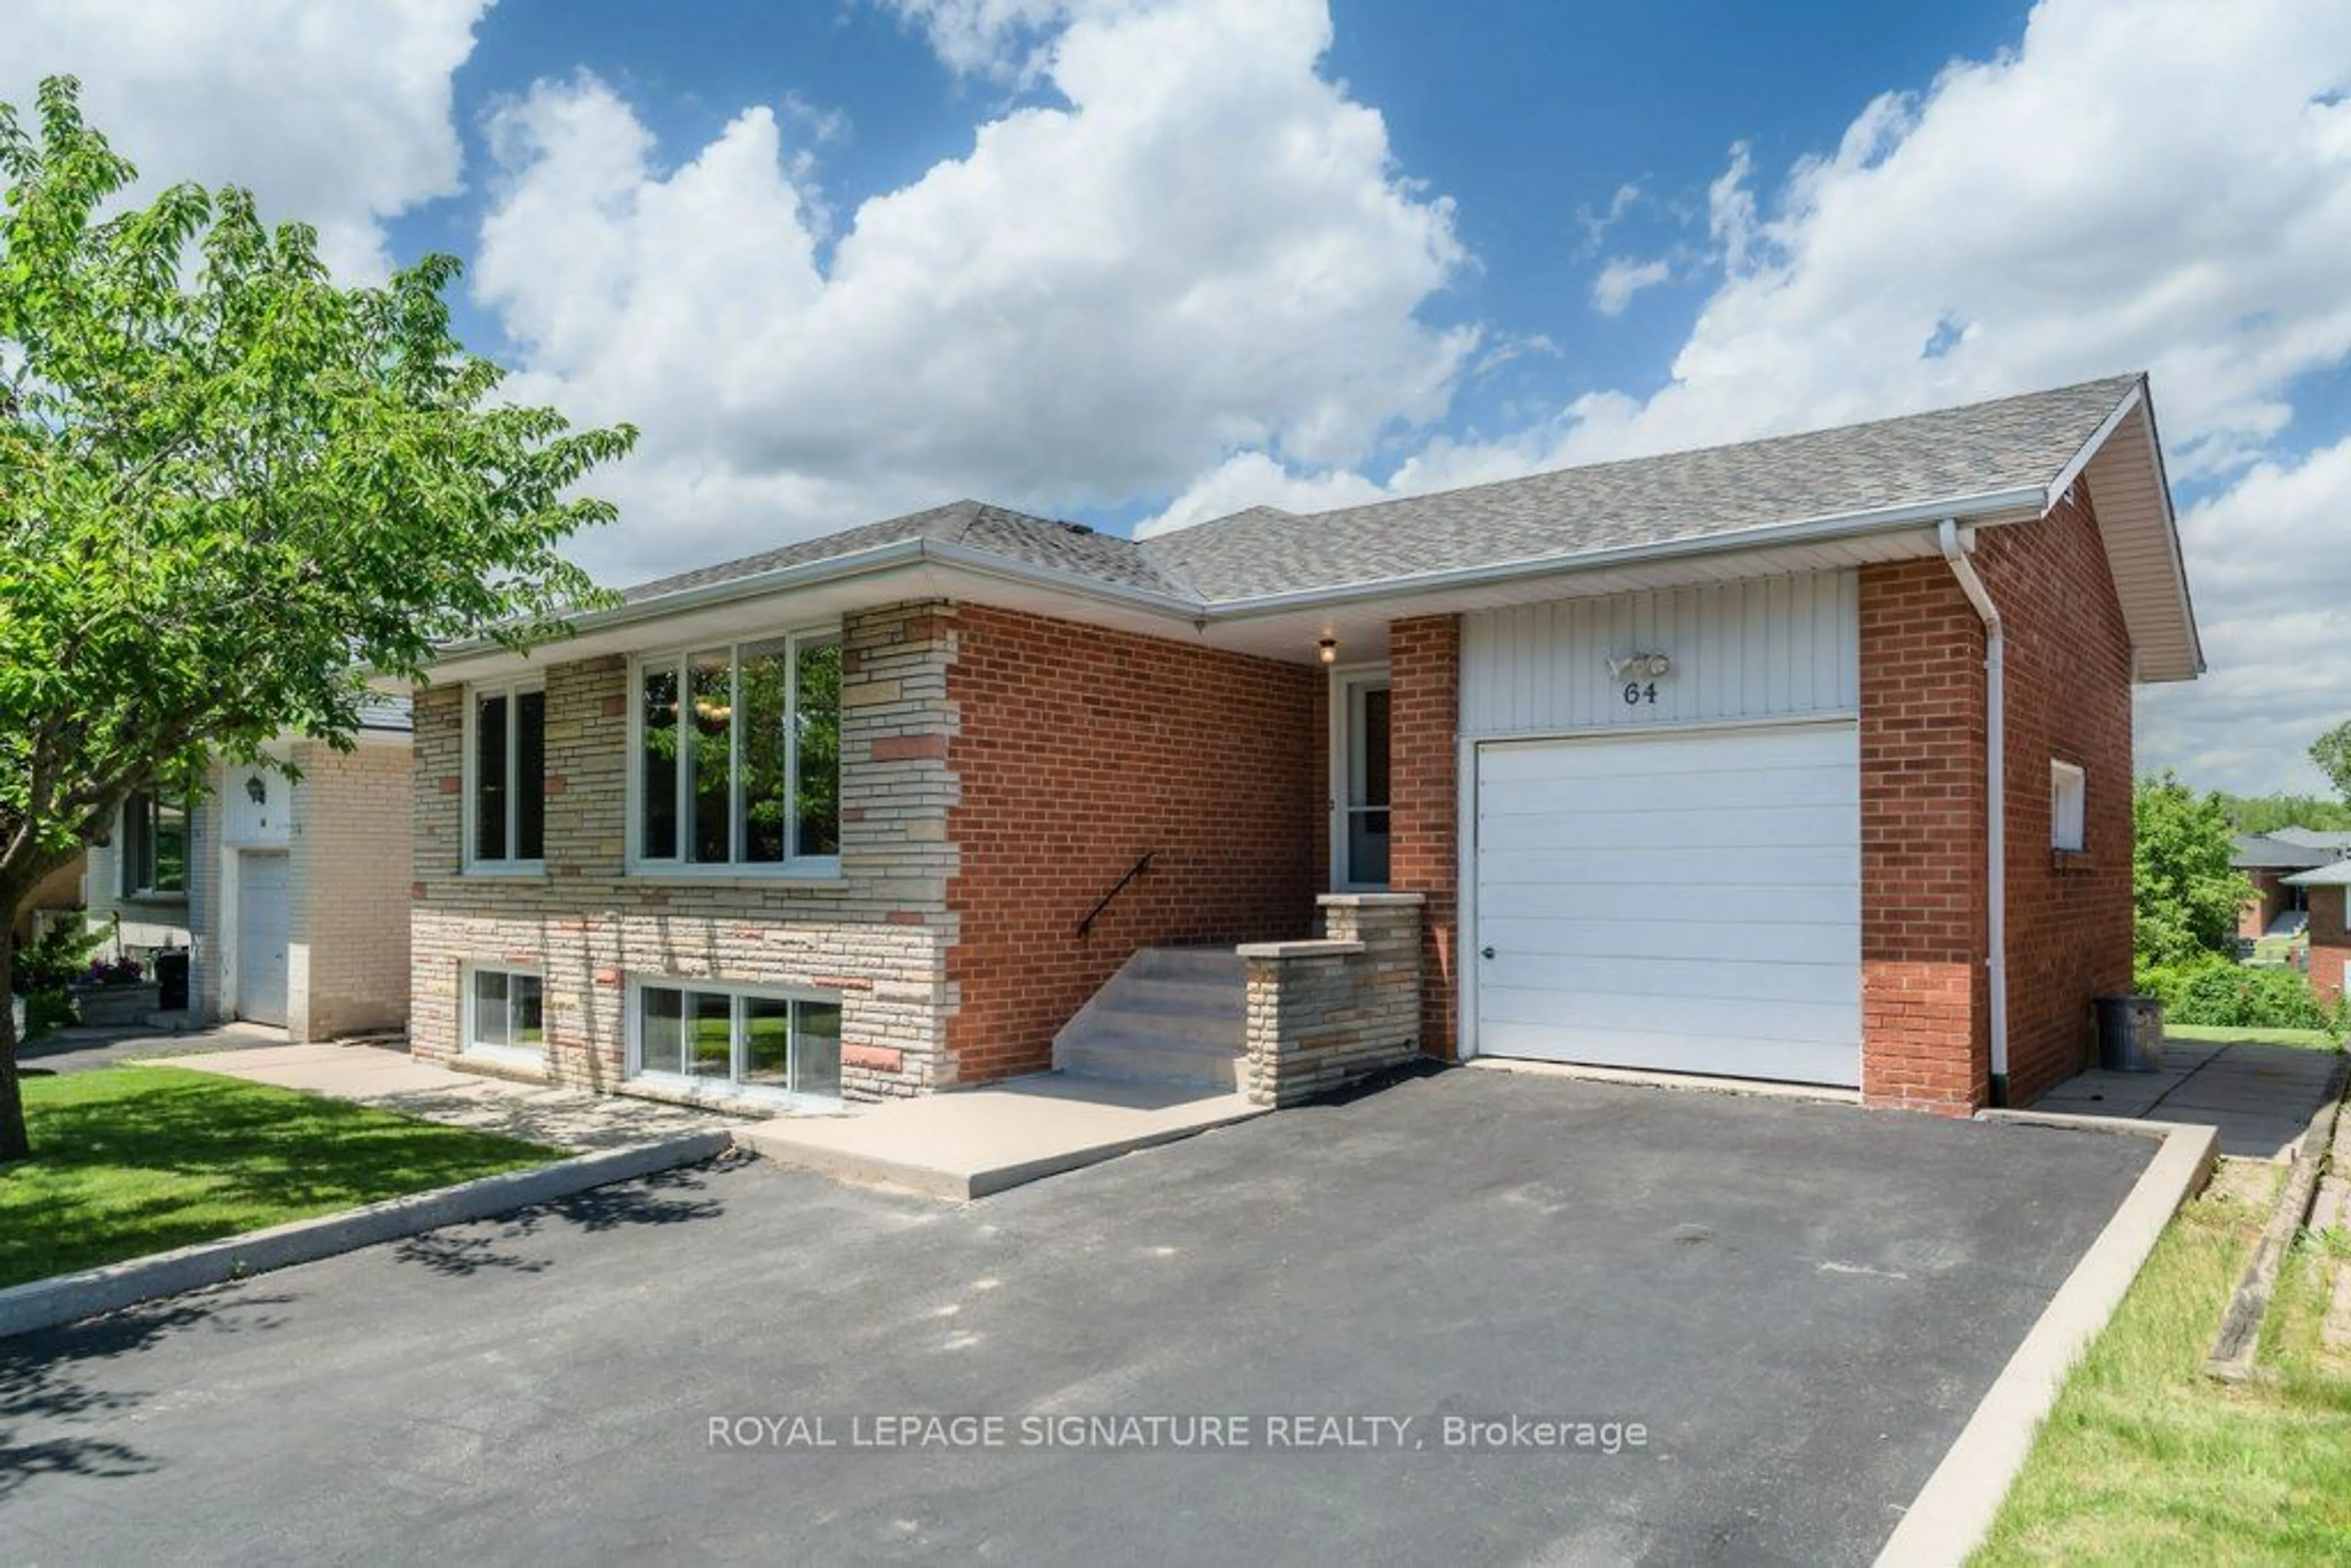 Home with brick exterior material for 64 RUSCICA Dr, Toronto Ontario M4A 1R4